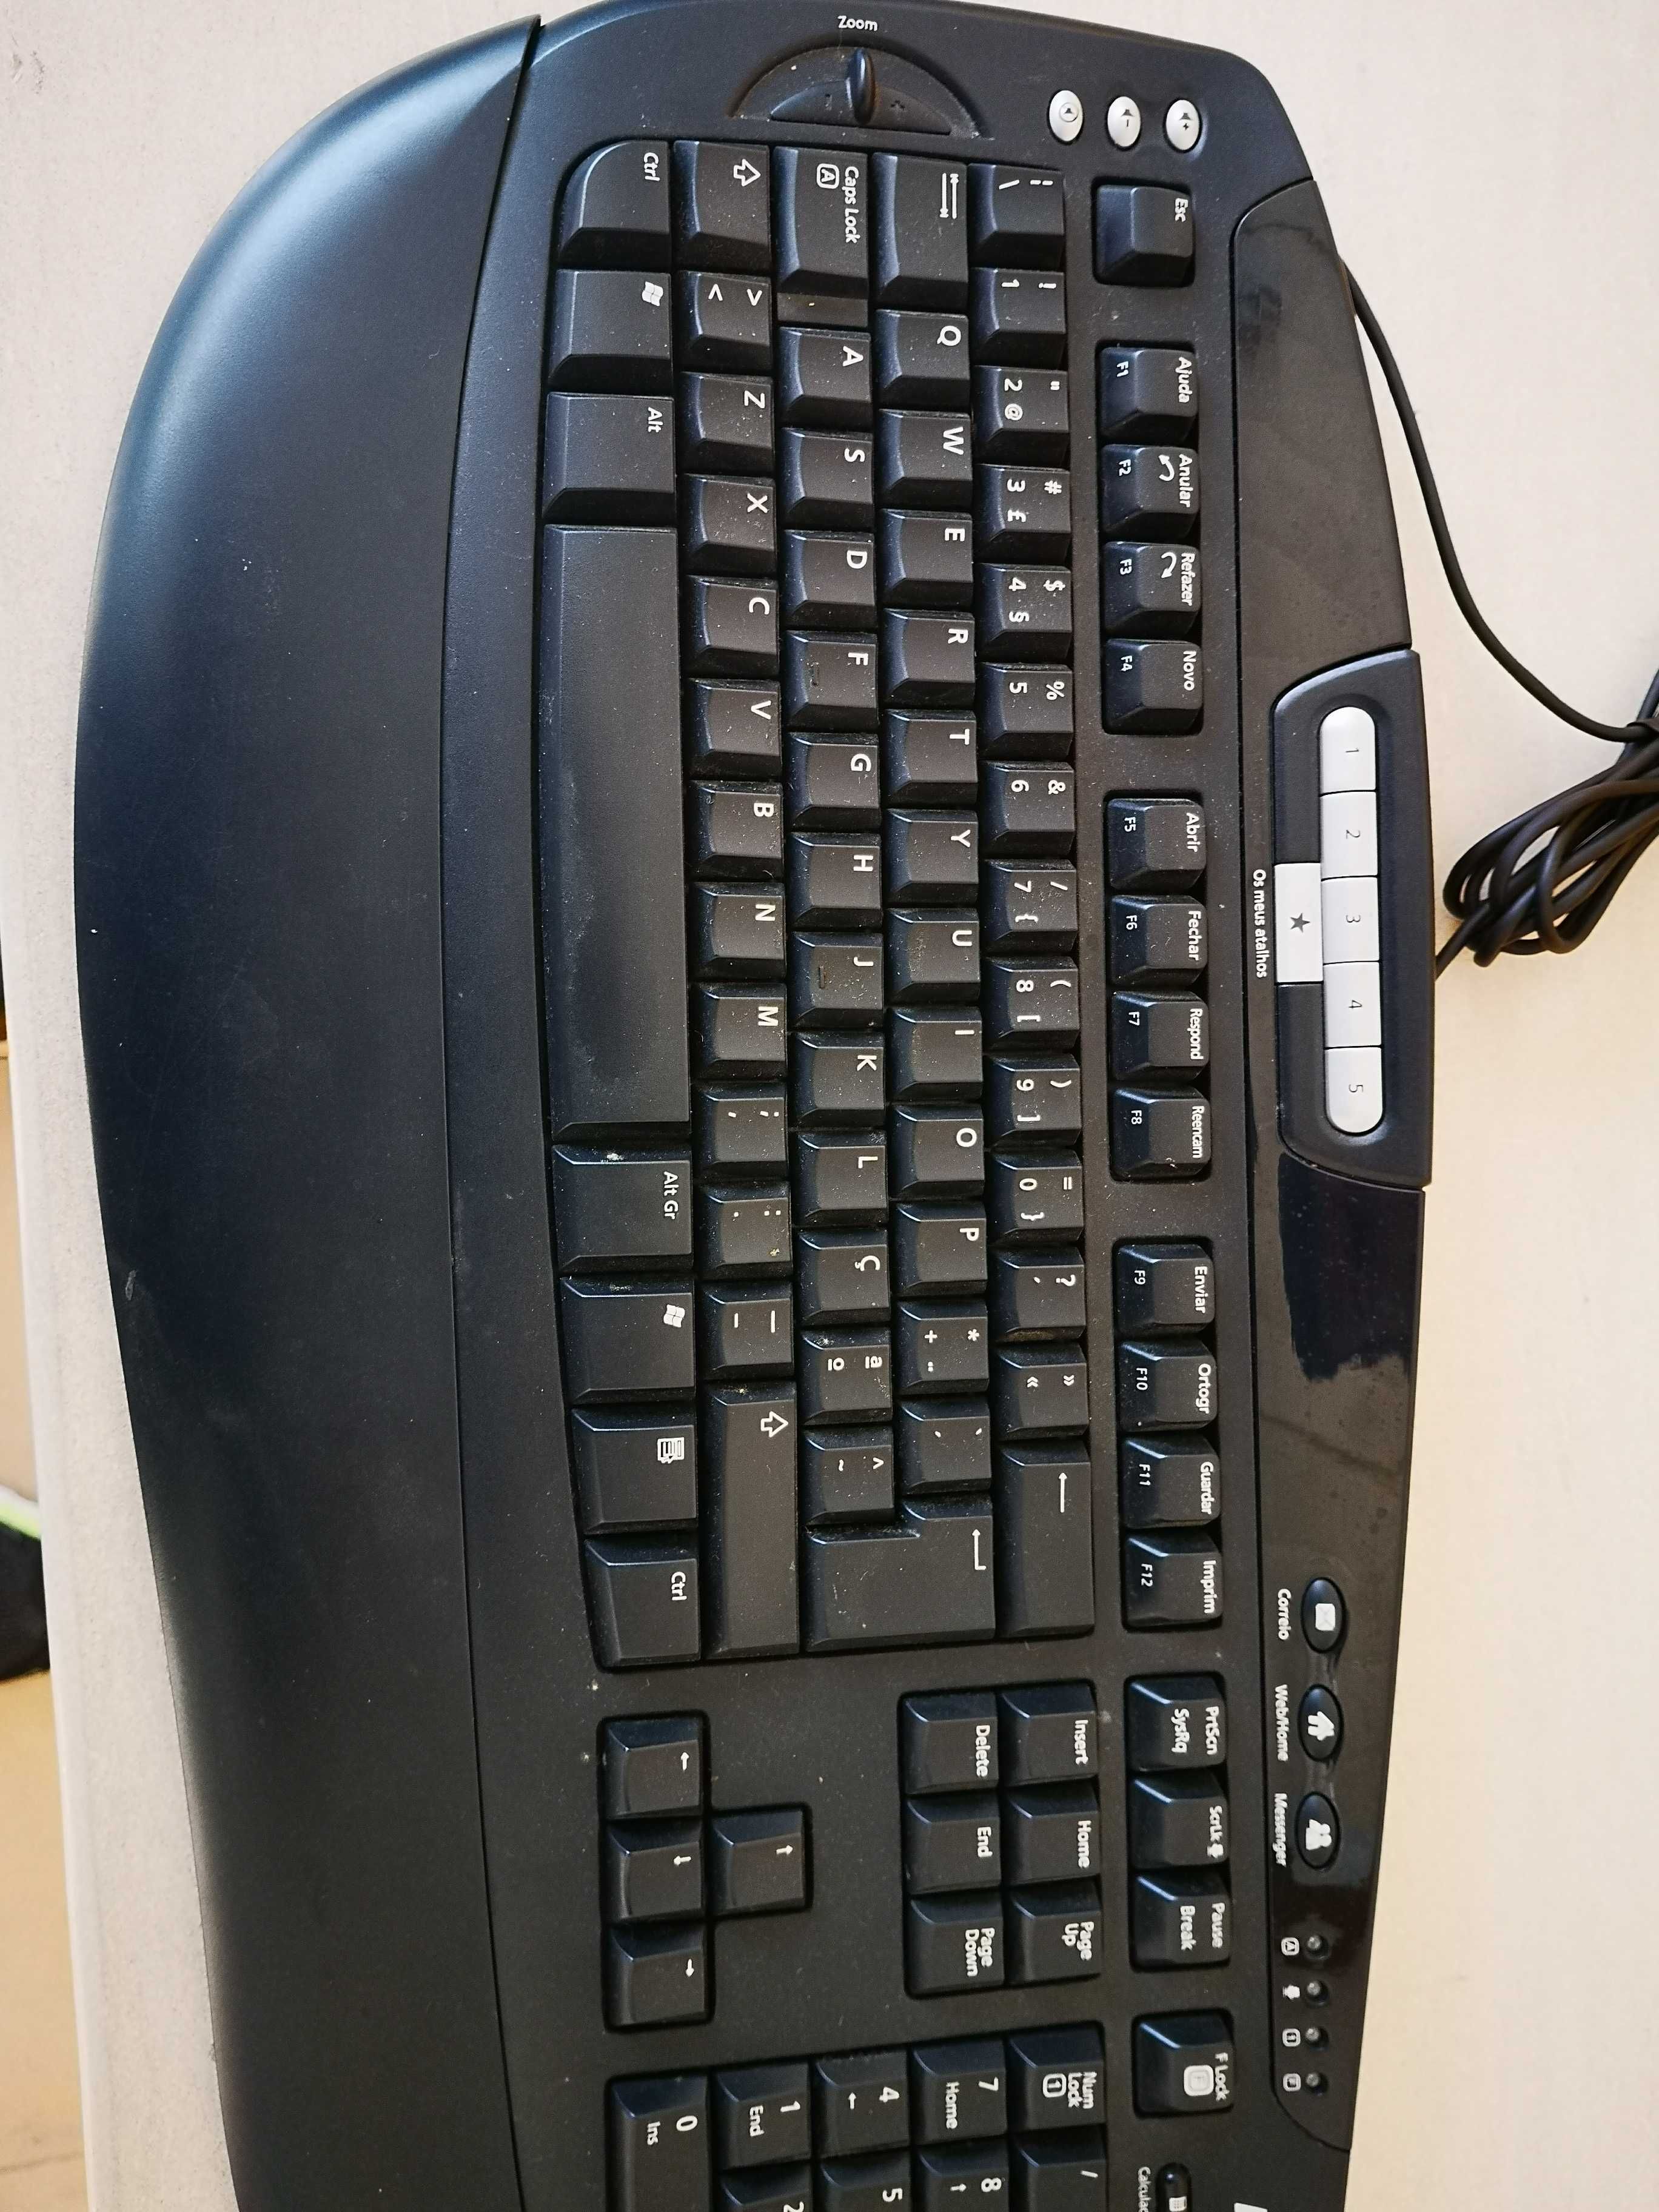 Teclado Microsoft Digital Media Keyboard com apoio de cotovelos